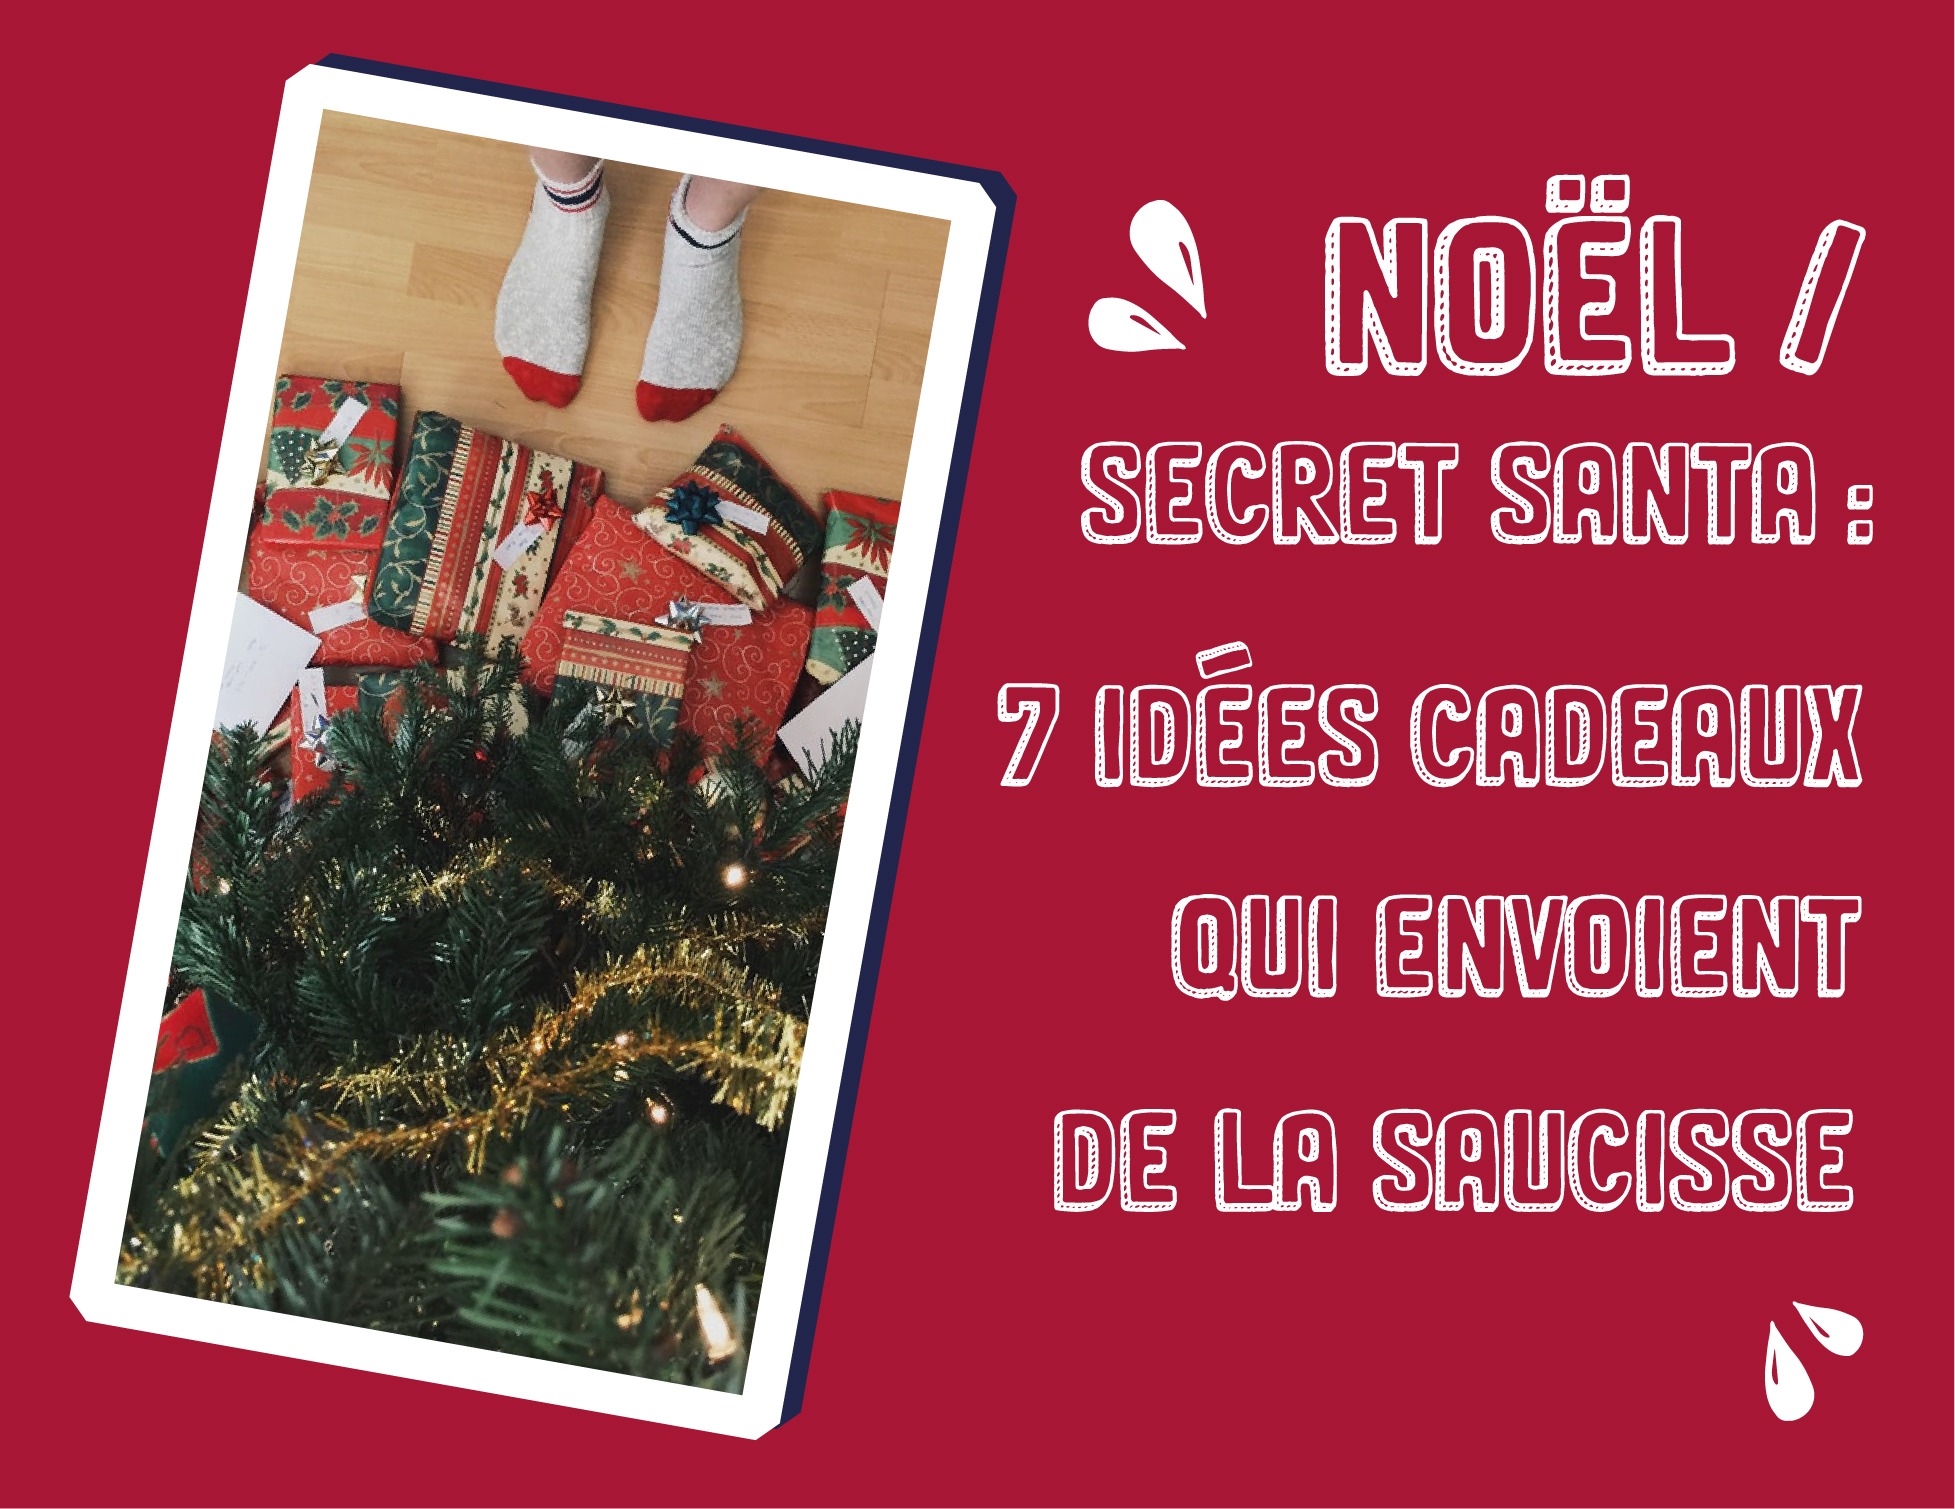 Noël / Secret Santa : 7 idées cadeaux qui envoient de la saucisse !